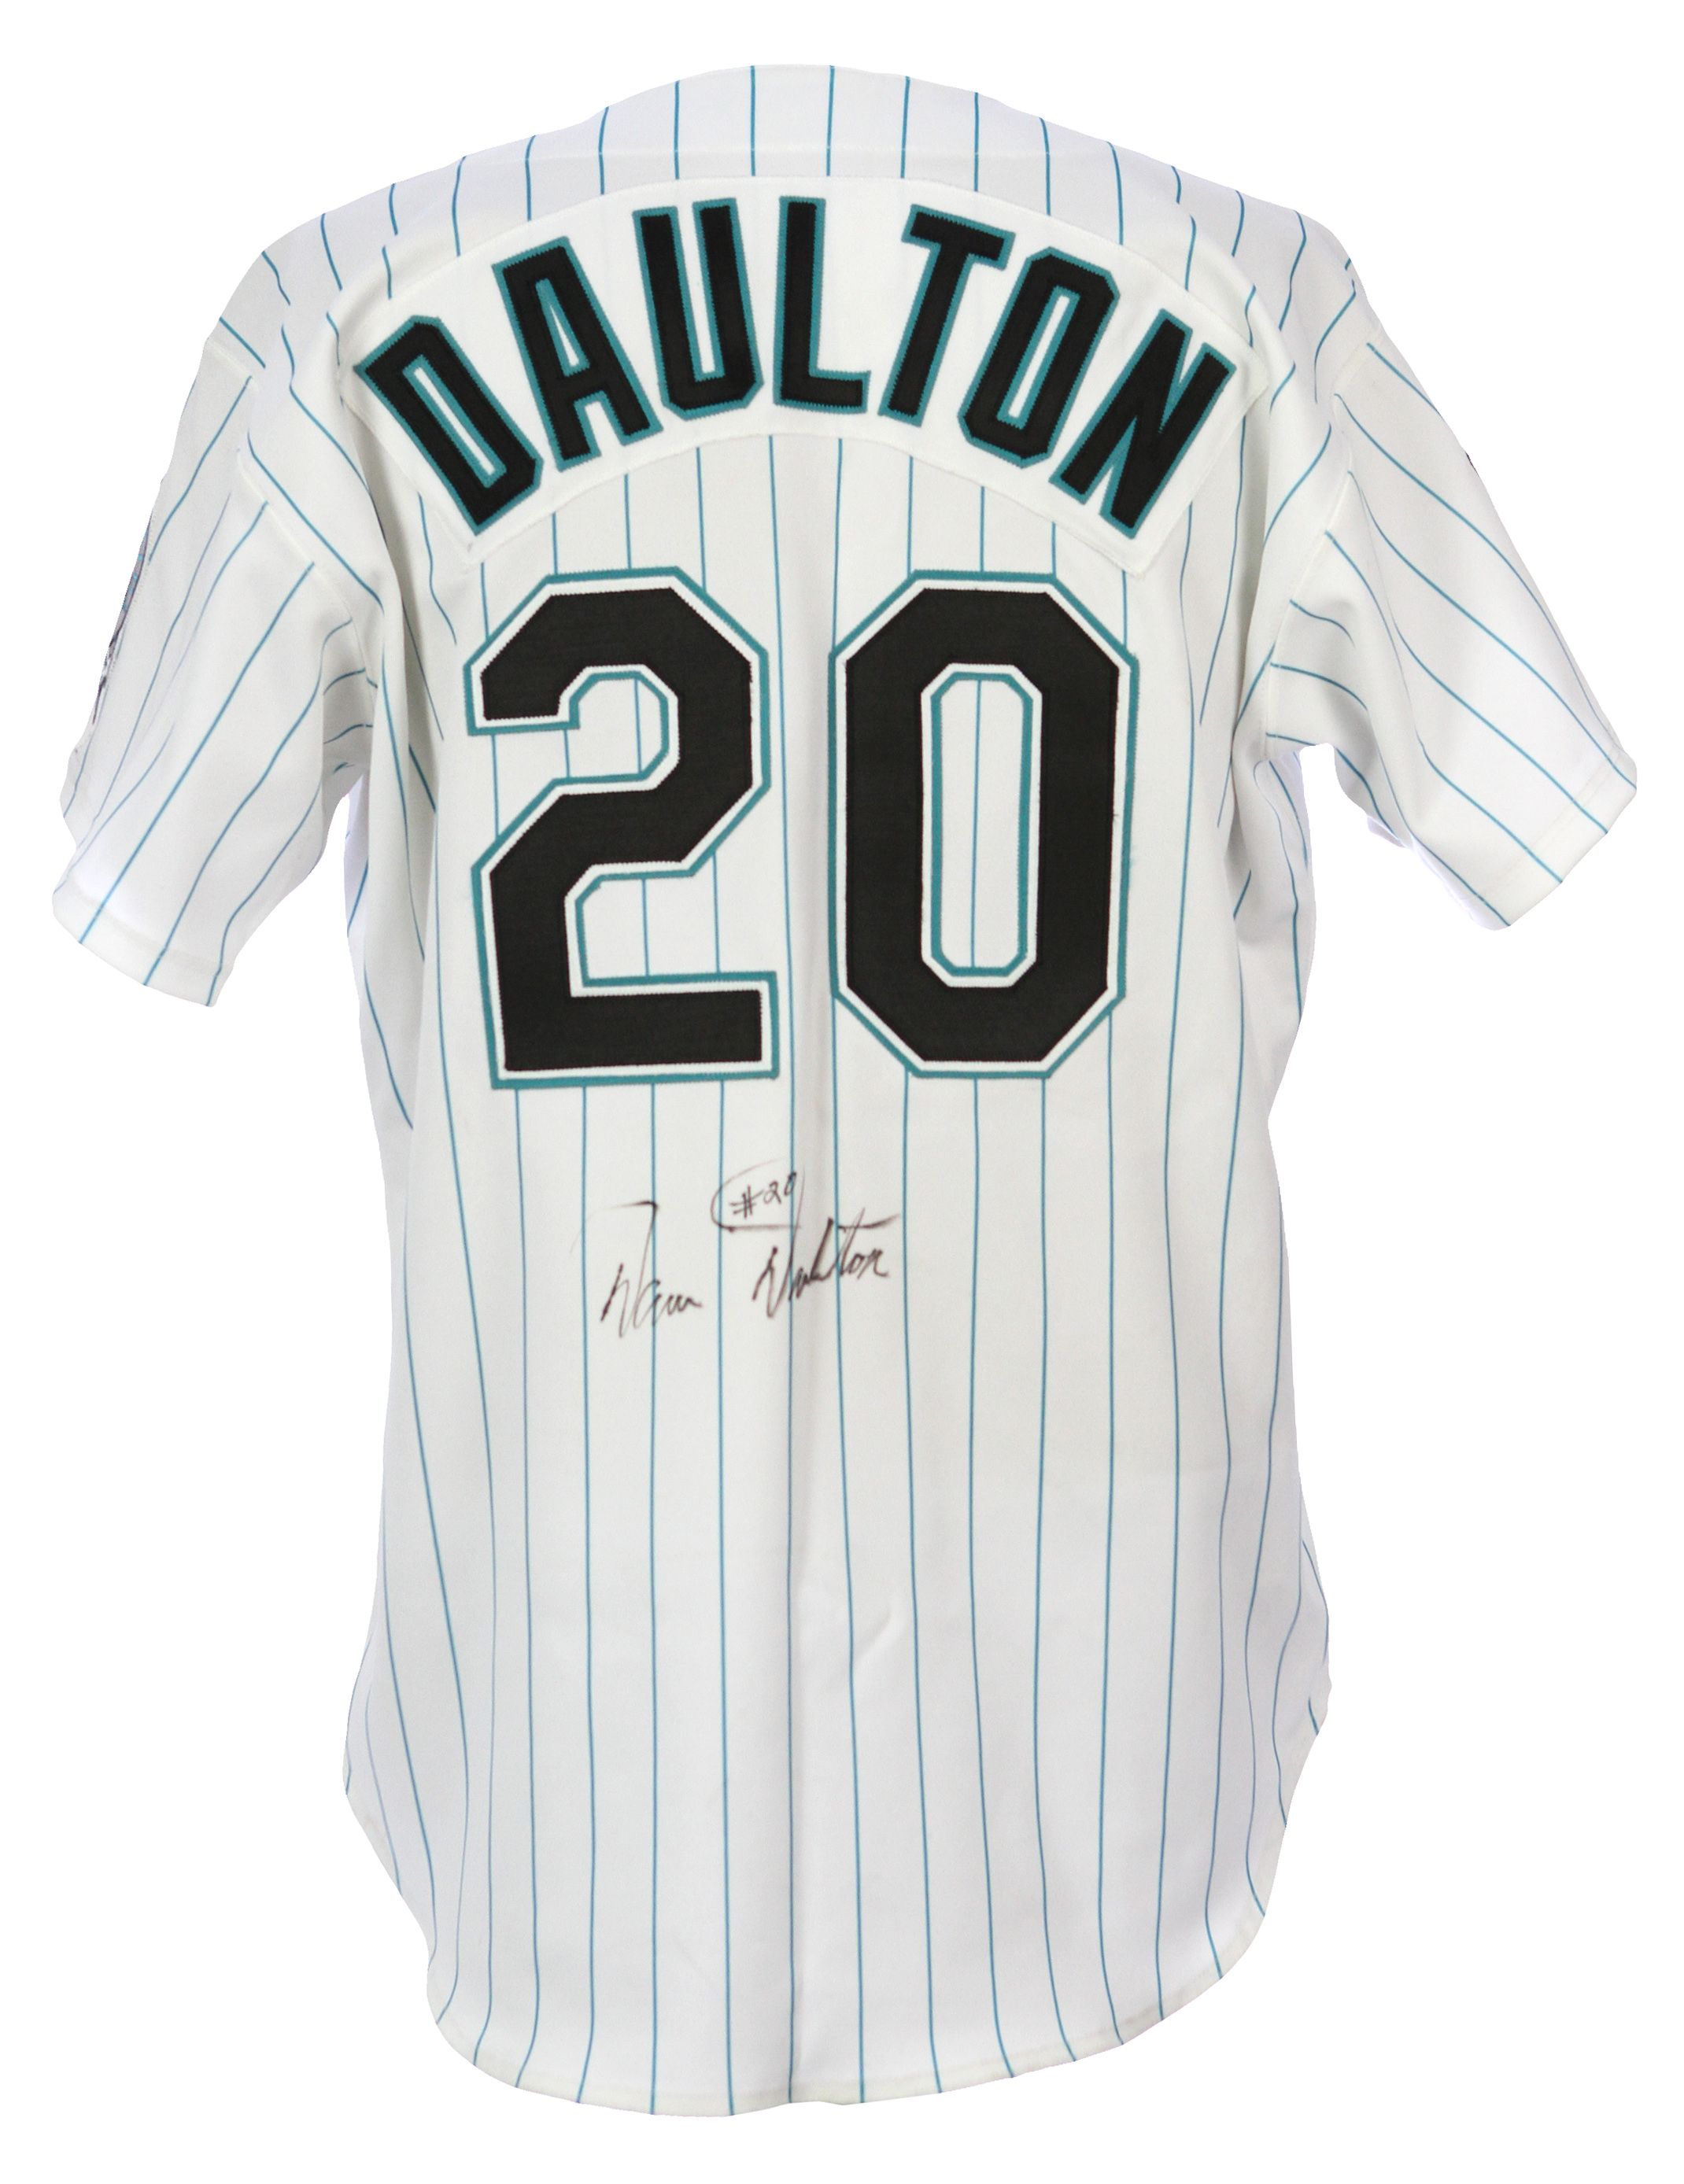 Darren Daulton Foundation on X: Darren's @Marlins jersey. #tbt